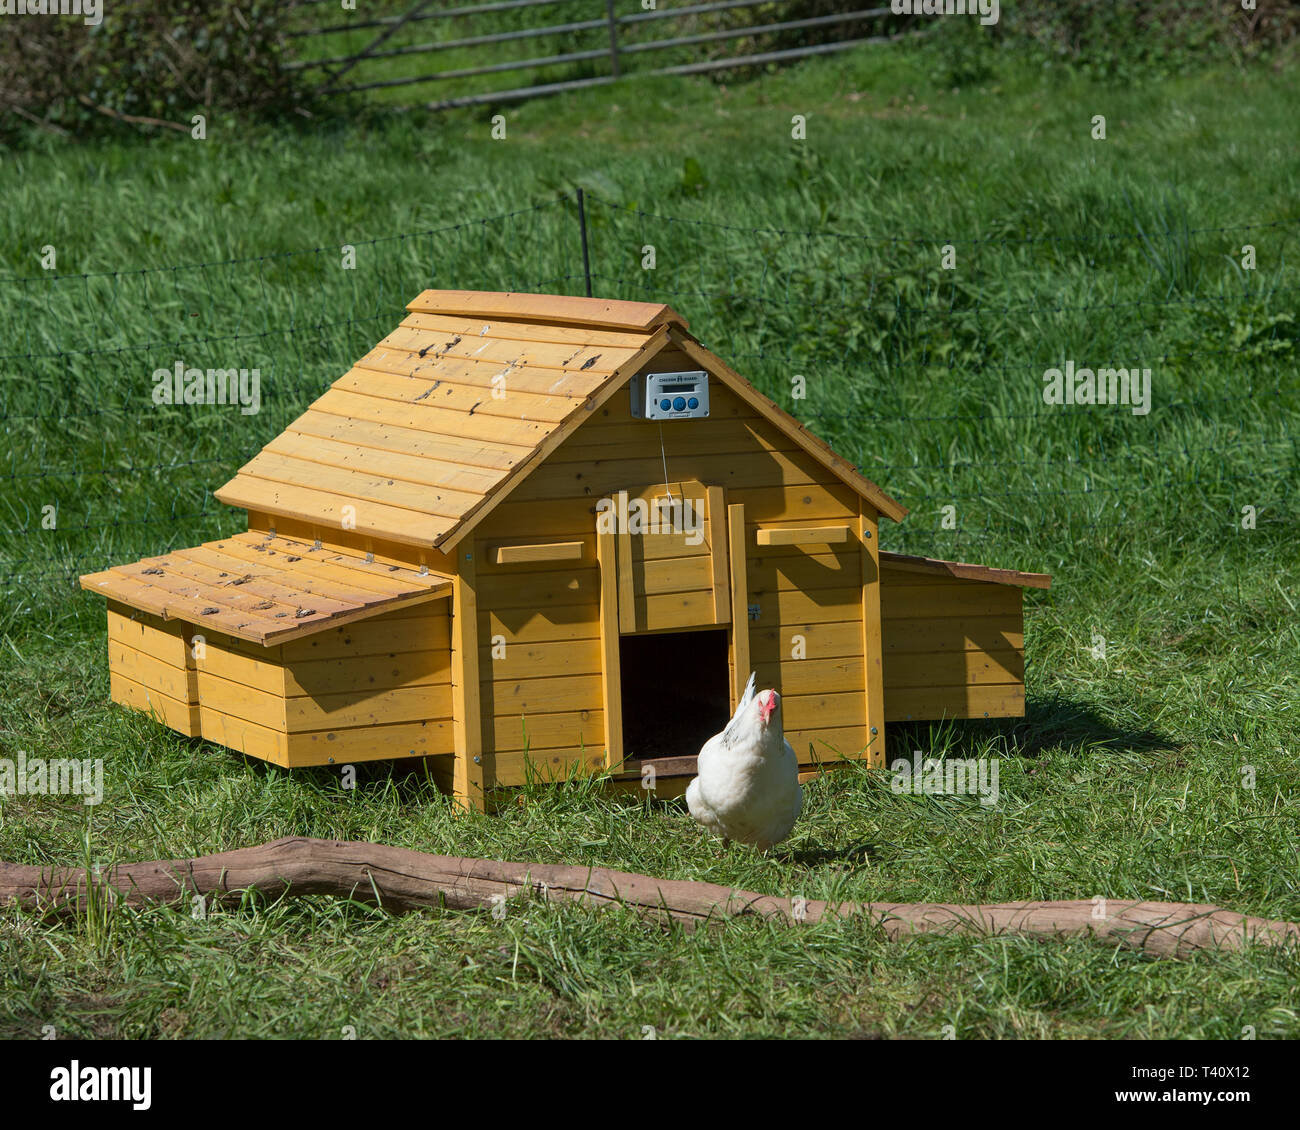 chicken coop with door on timer Stock Photo